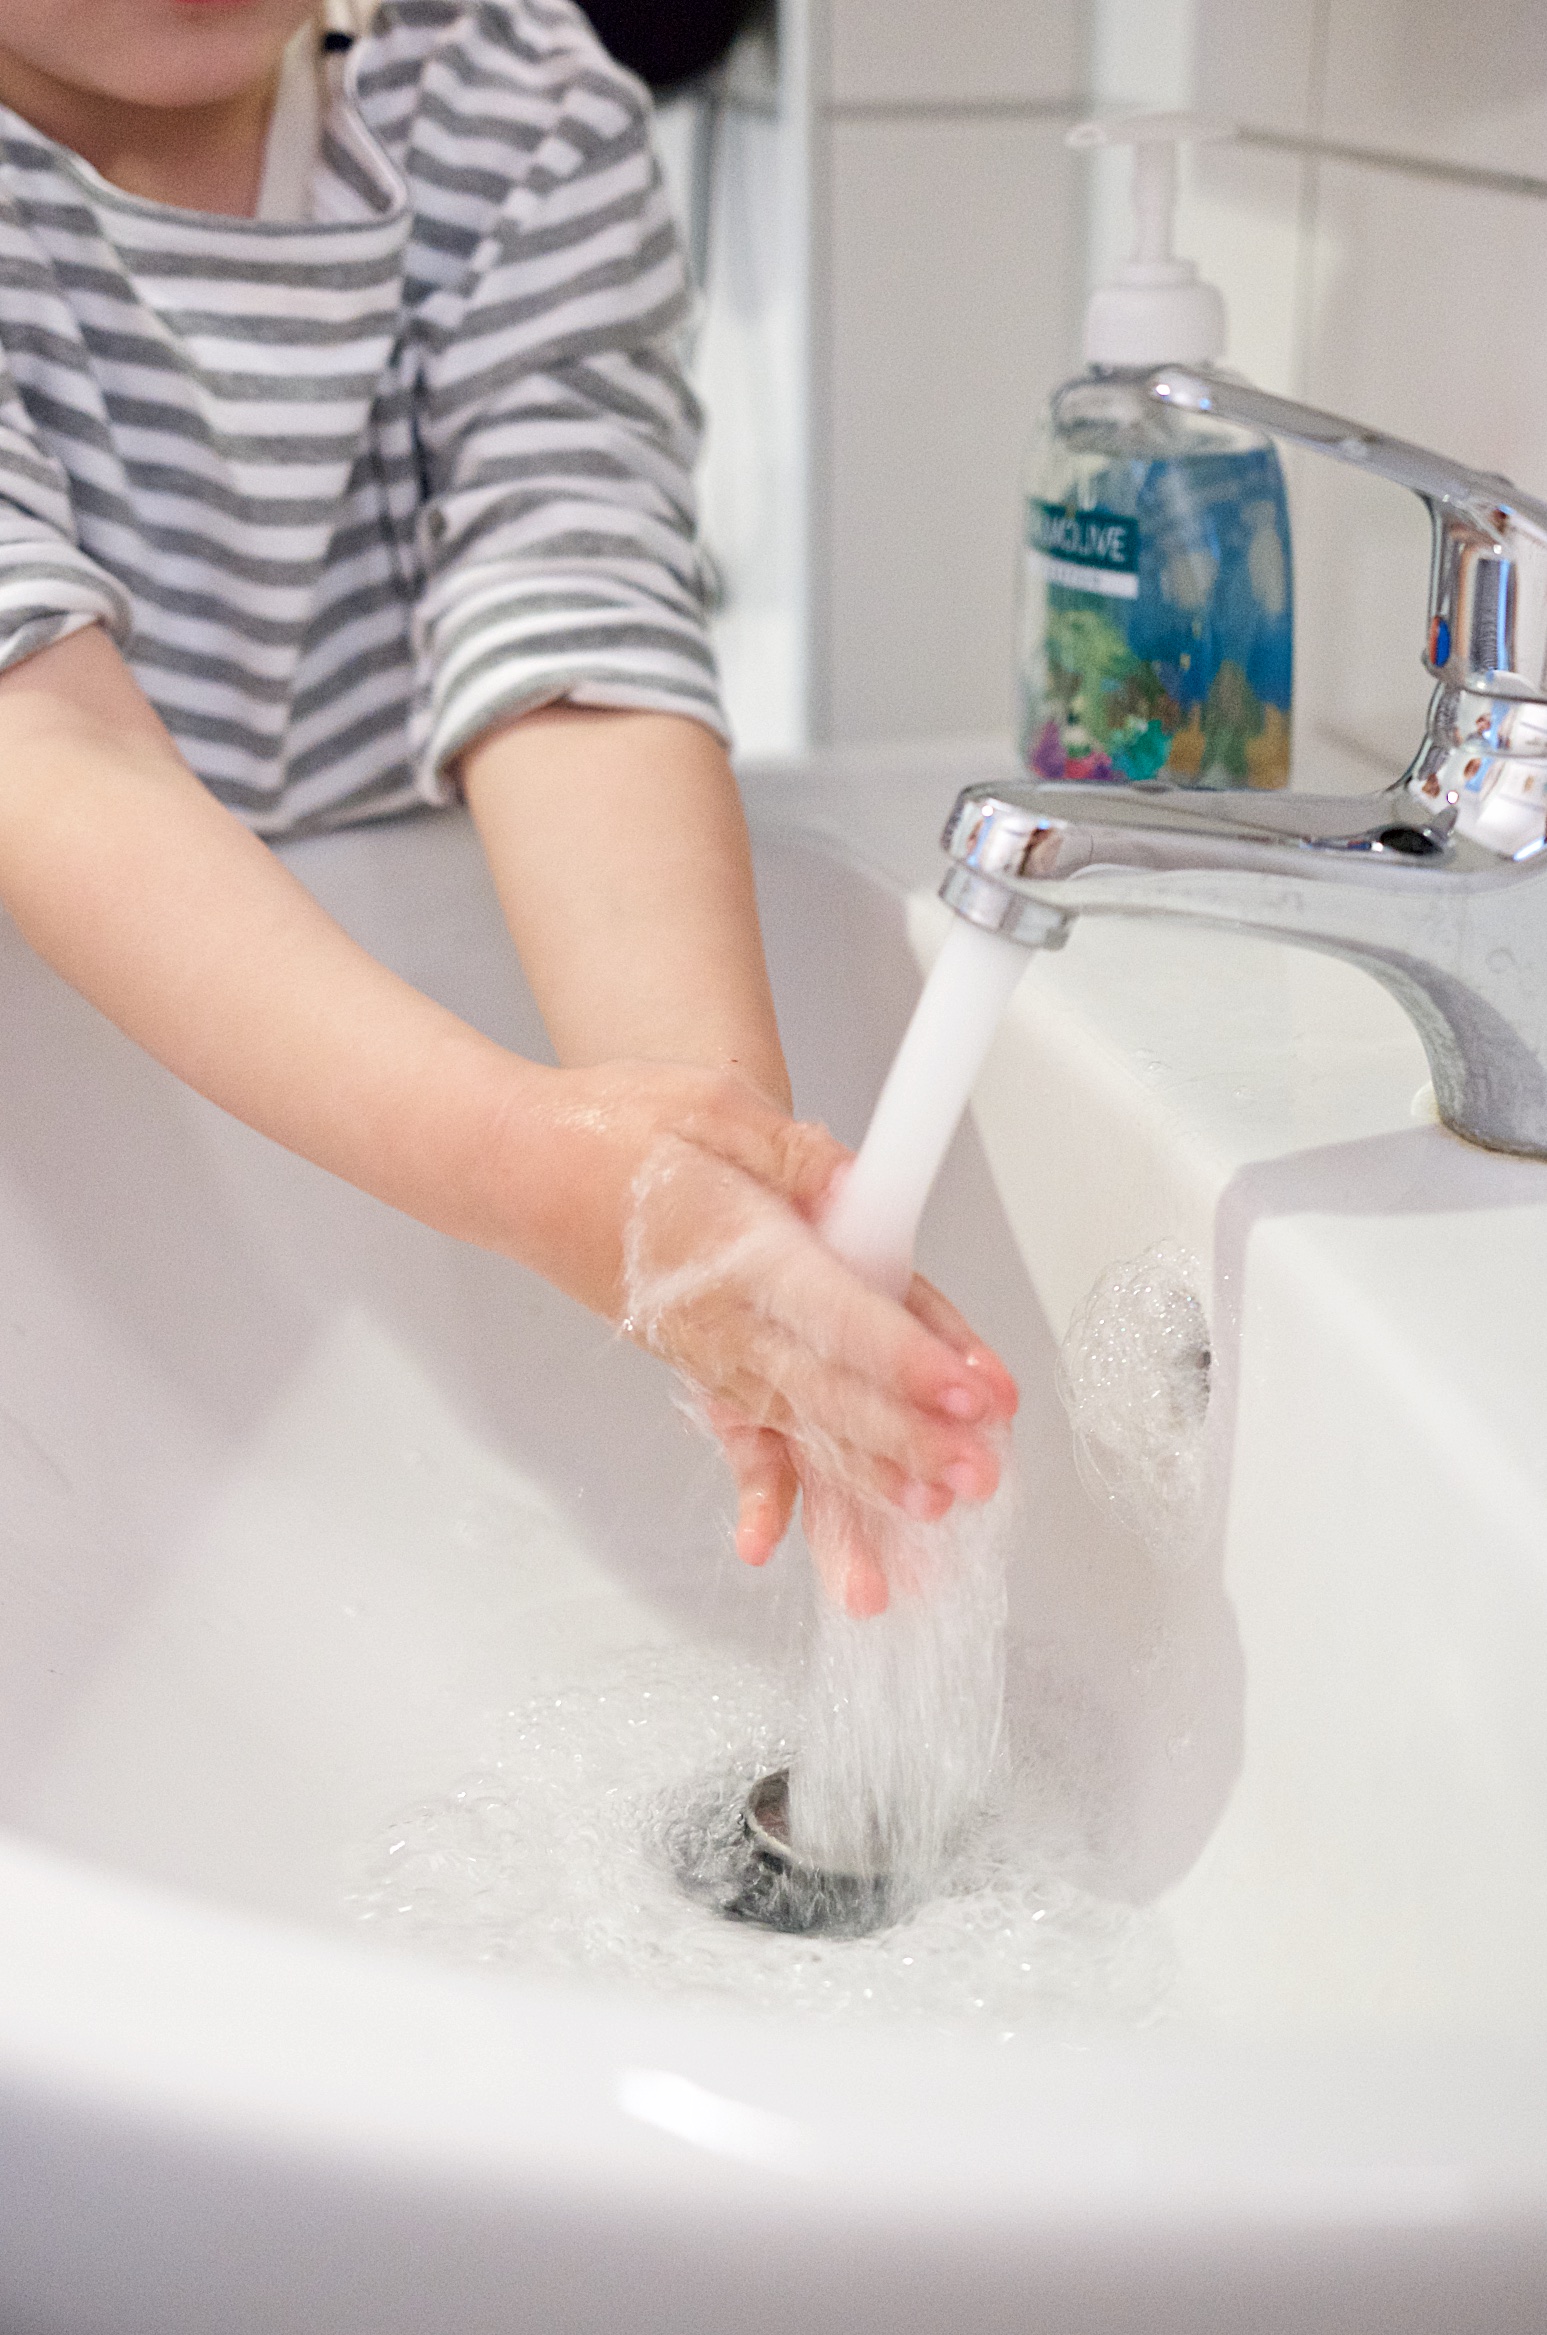 Händewaschen muss sein! Oder? Diskutiert mit #waschdiehände und gewinnt 1000 Euro Reisegutschein